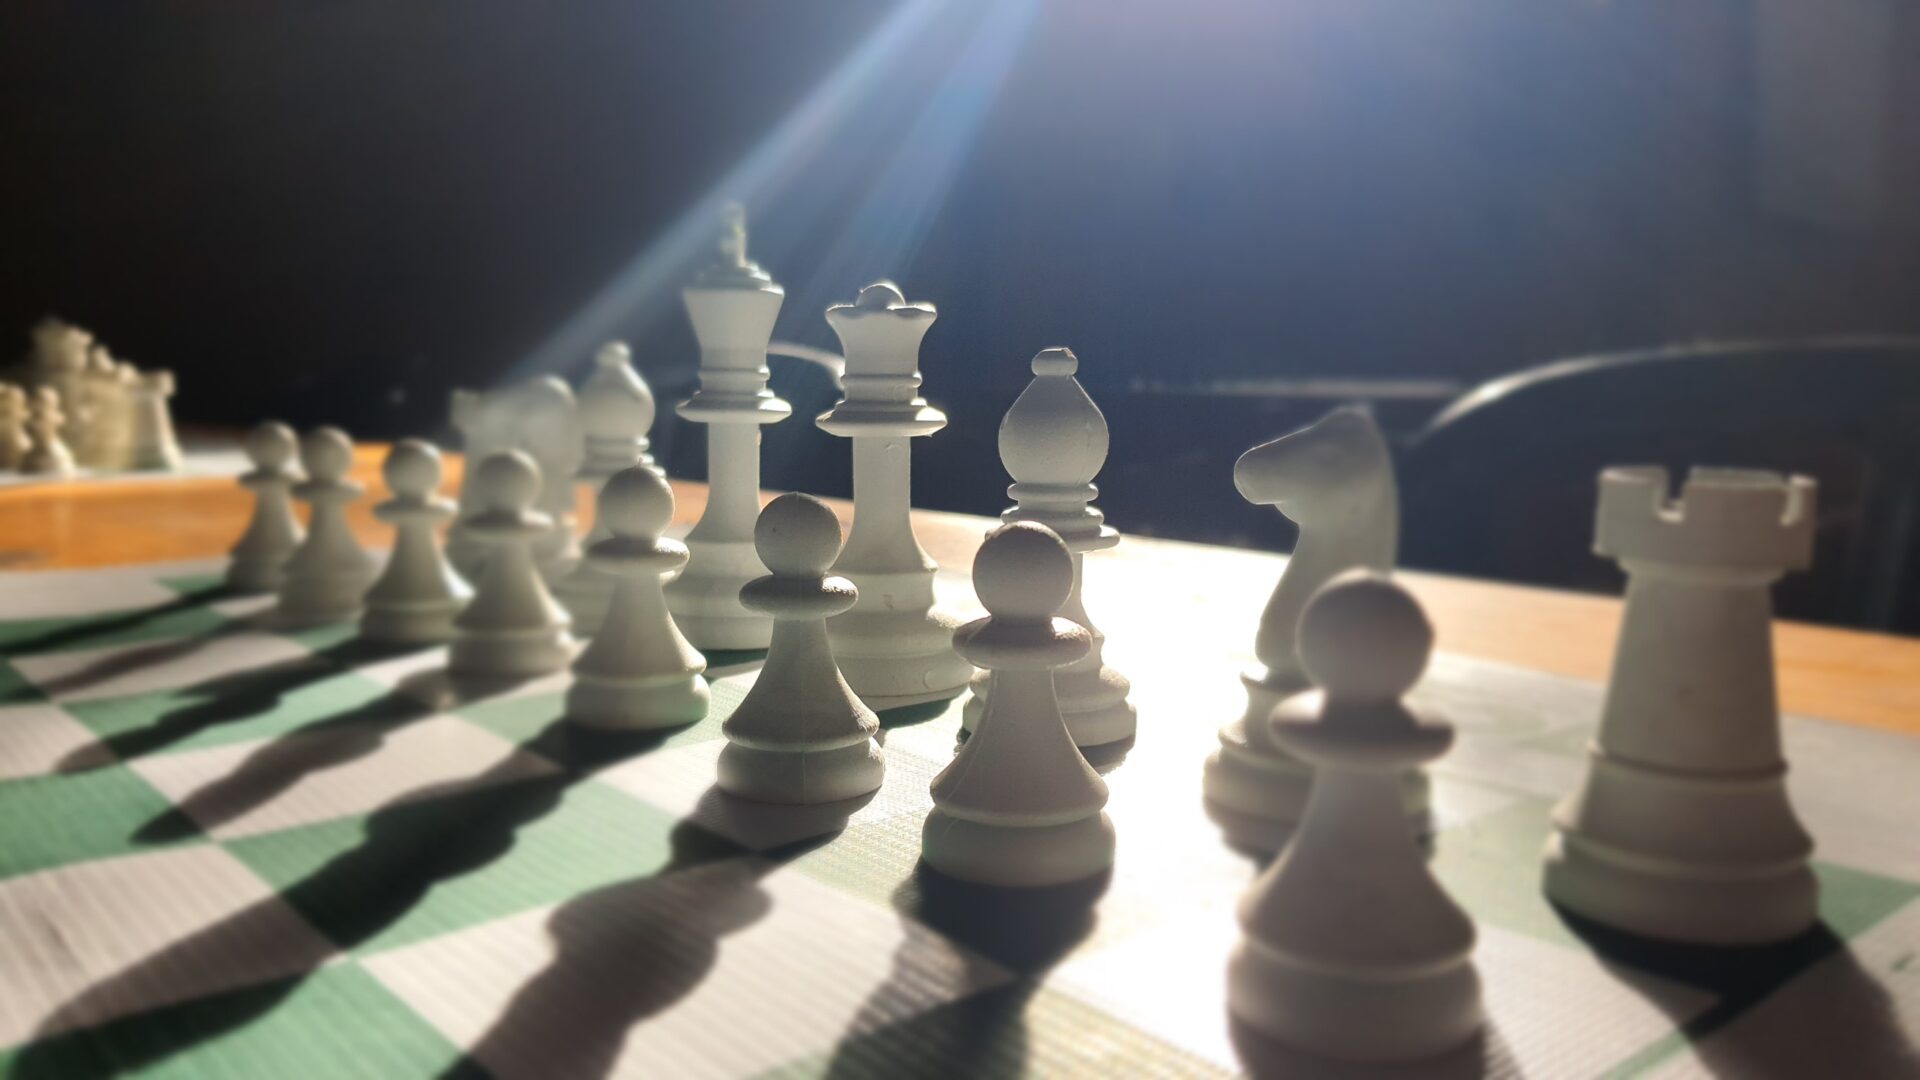 Jogos Estudantis de Xadrez por Equipe envolvem mais de sete mil